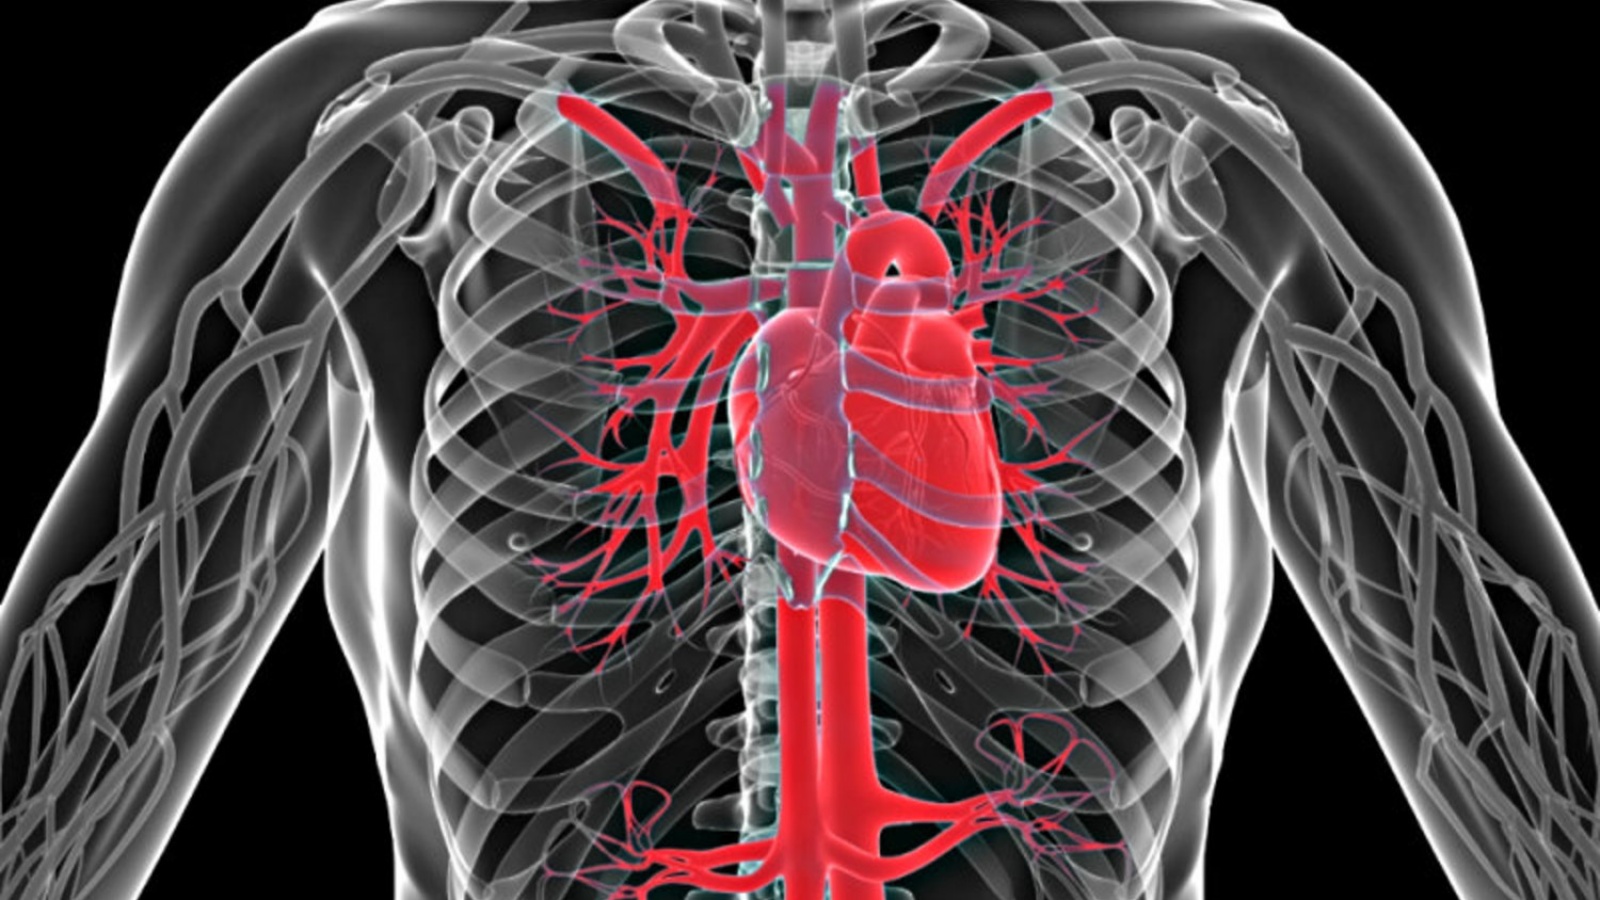 يكرر القلب الاصطناعي إيقاعات القلب الحقيقي (توضيحية)